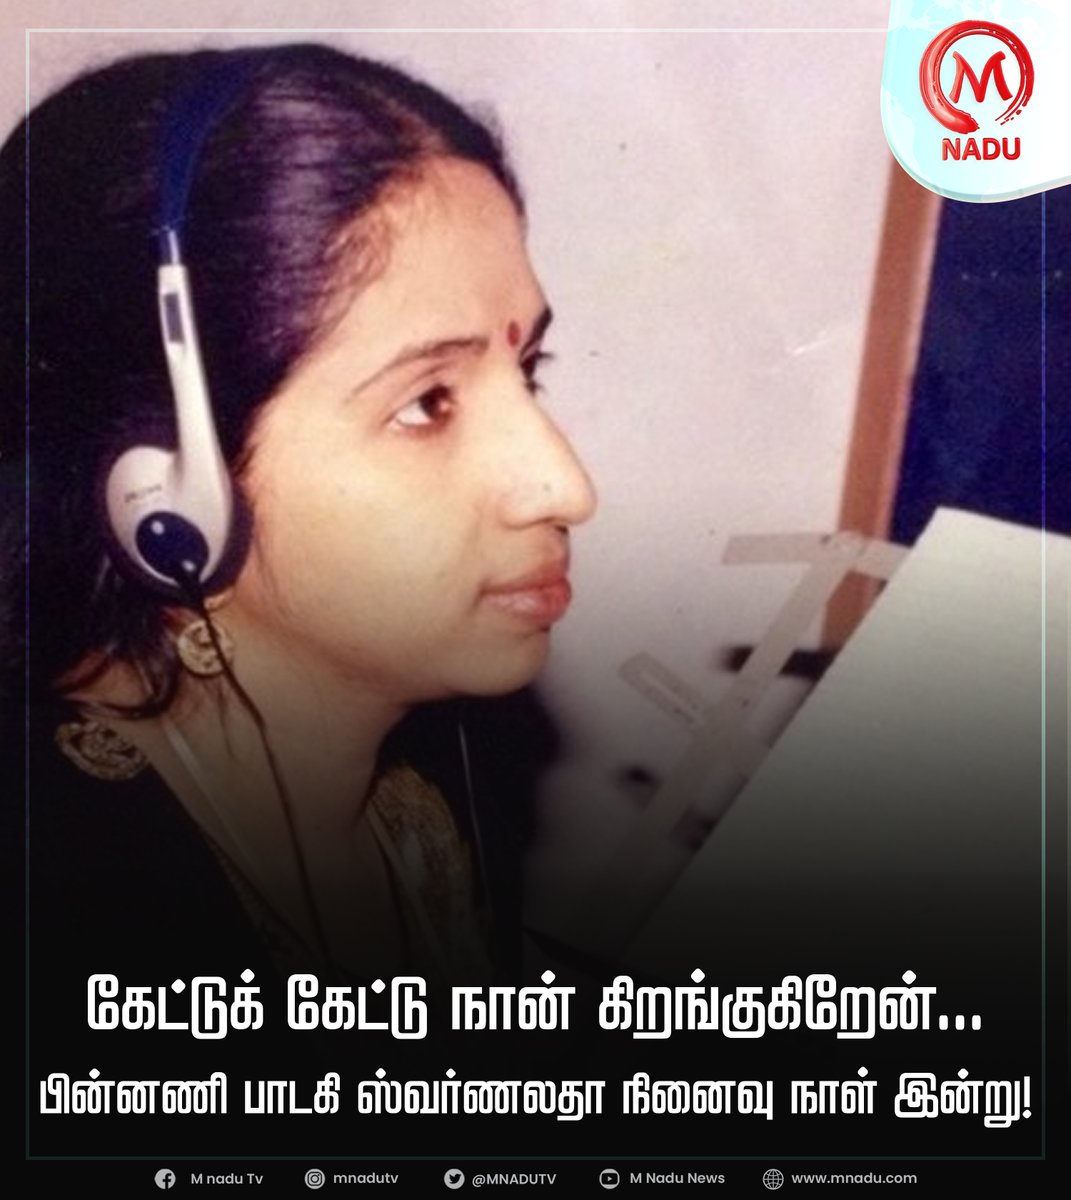 பின்னணி பாடகி ஸ்வர்ணலதா நினைவு நாள் இன்று!

#MNadu | #Swarnalath | #RememberingSwarnalatha